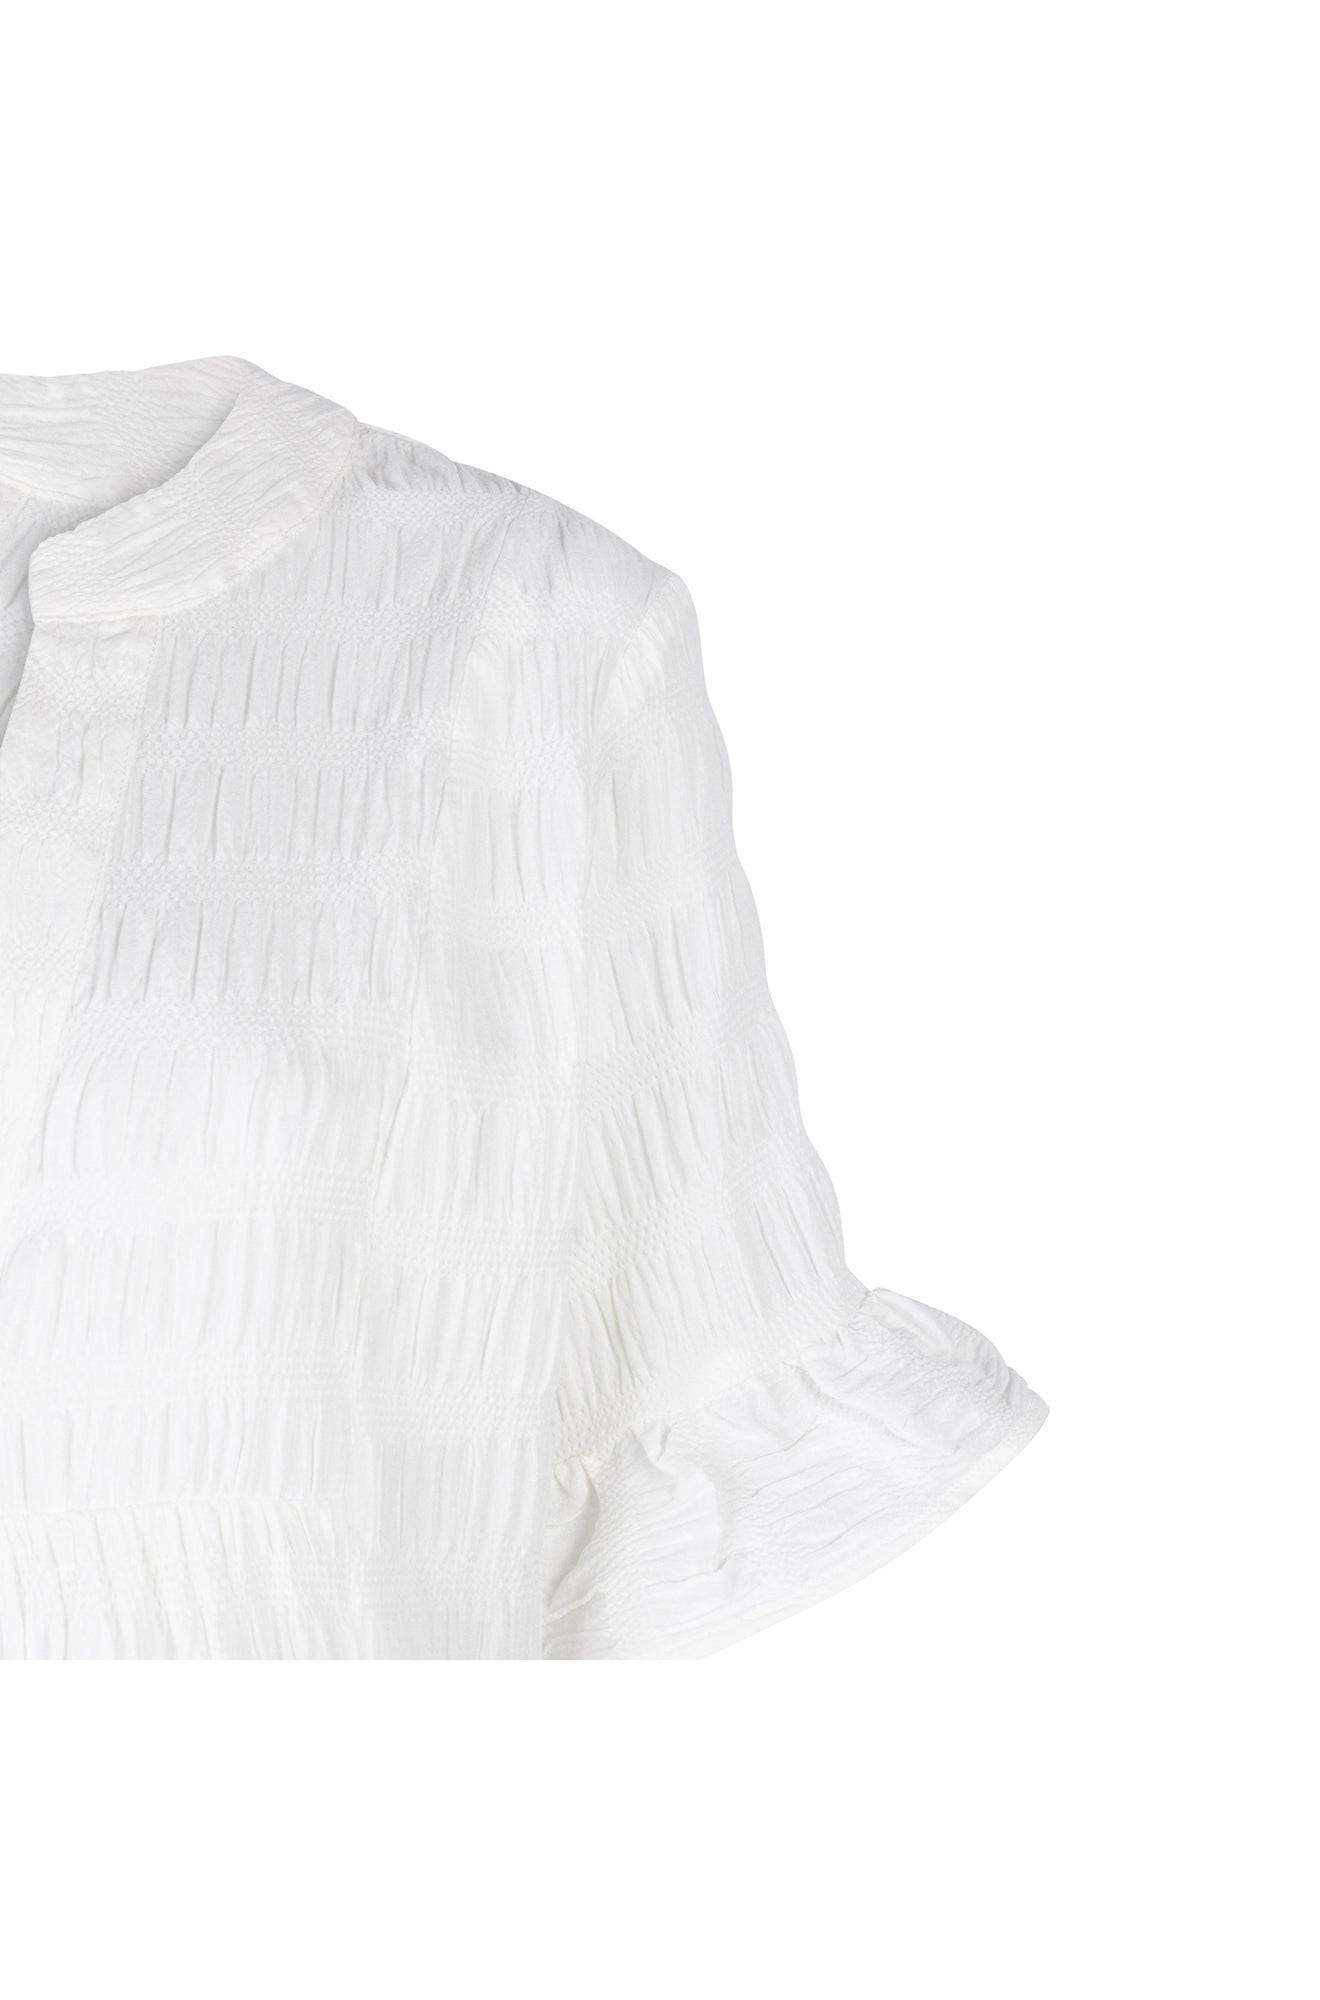 Robe pour femme par Esqualo | HS2414236 Blanc/120-OFFWHITE | Boutique Vvög, vêtements mode pour homme et femme